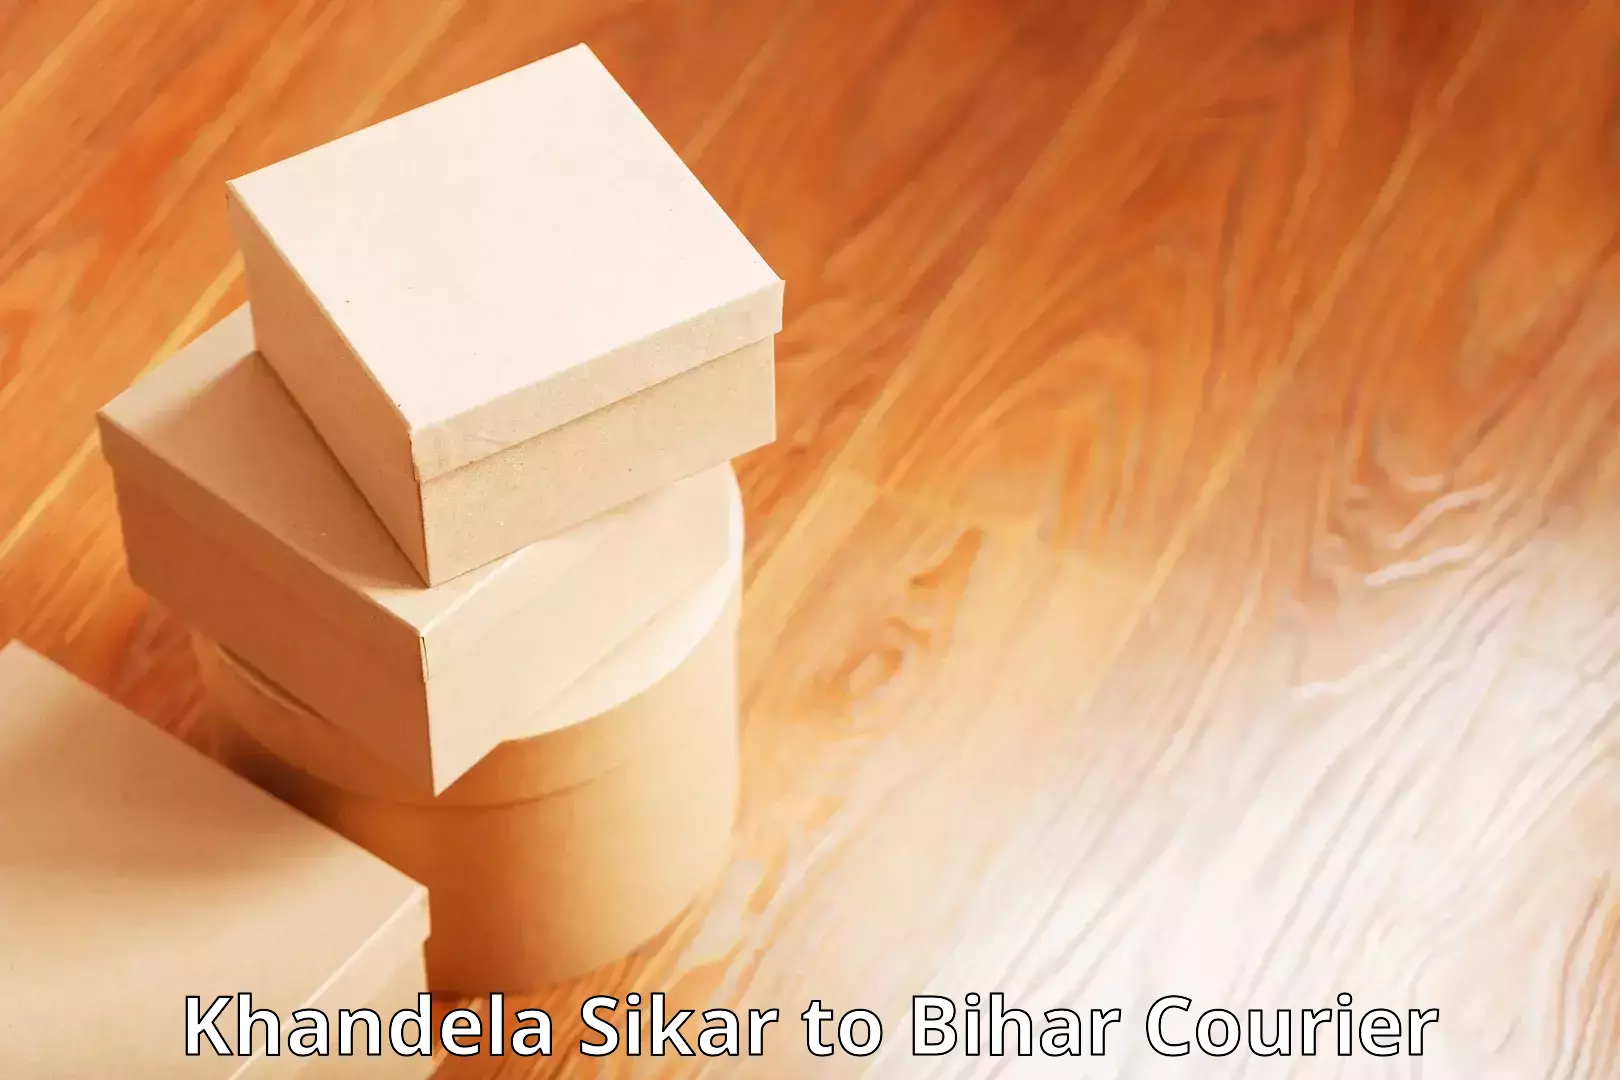 E-commerce fulfillment Khandela Sikar to Raghunathpur Buxar